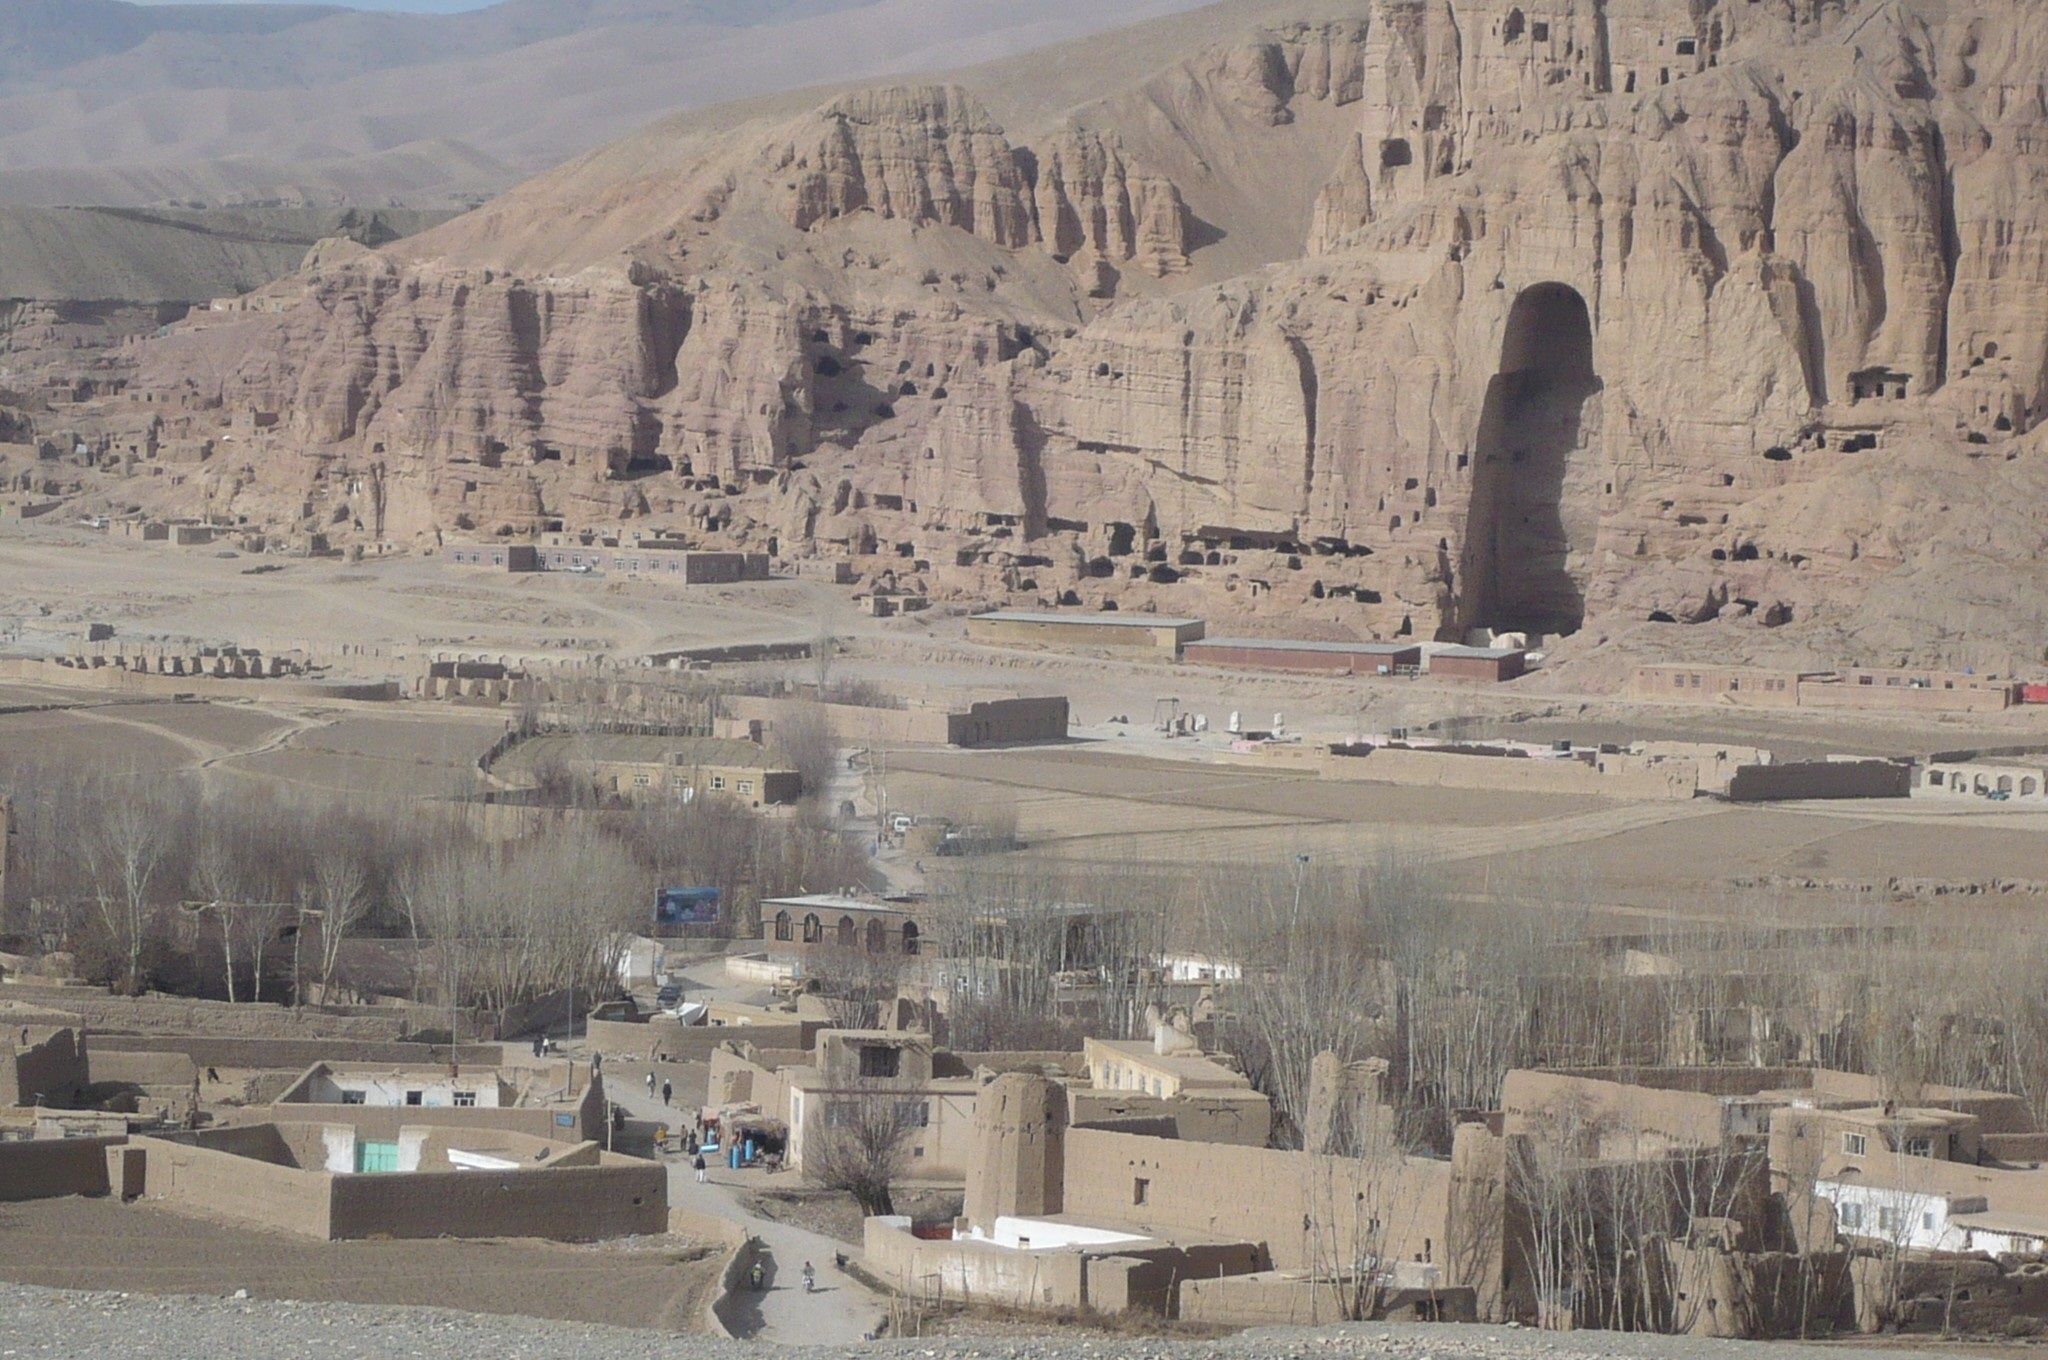 16-08-2021 Paisaje cultural y vestigios arqueológicos del Valle de Bamiyán (Afganistán) POLITICA ROLAND LIN/UNESCO 